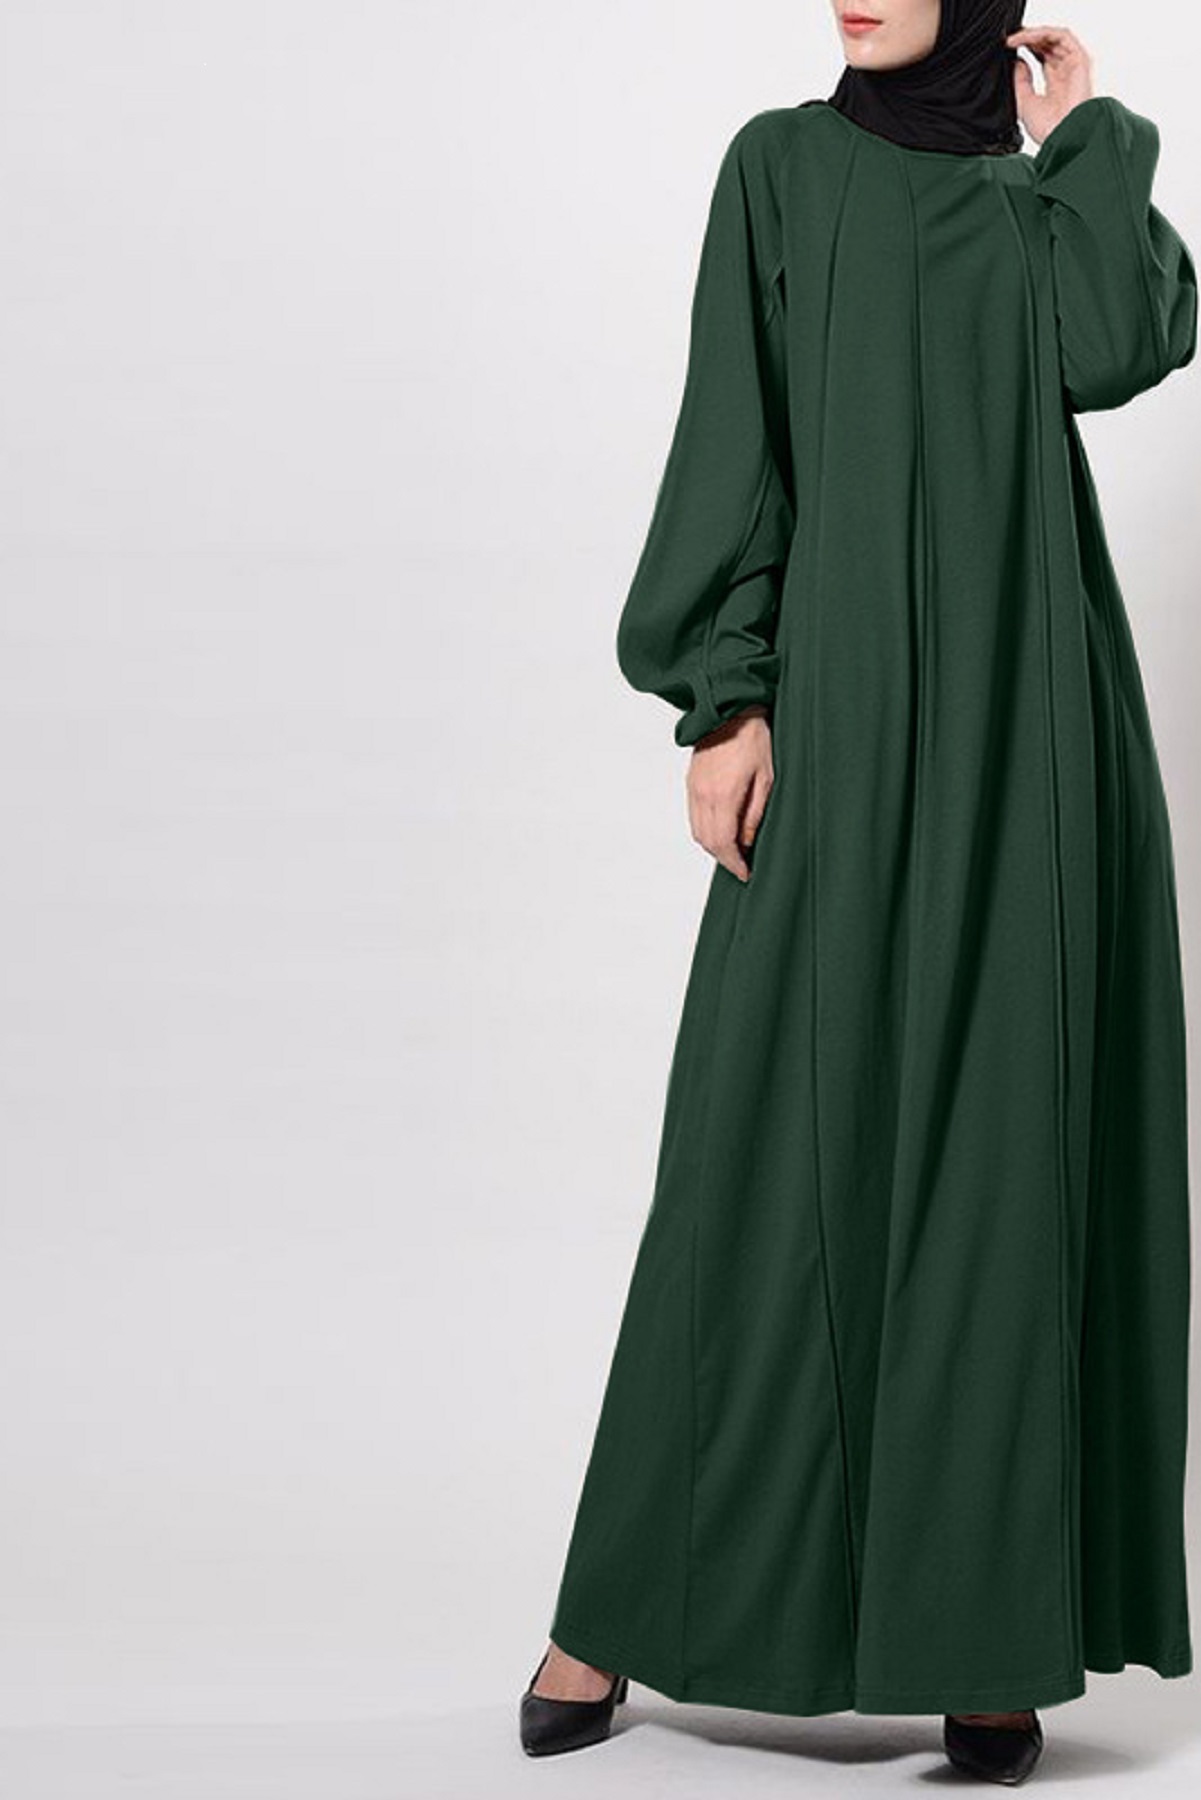 Abayas Online UK, Islamic Clothing UK, Jilbab & Modest Tops UK - Khimar ...